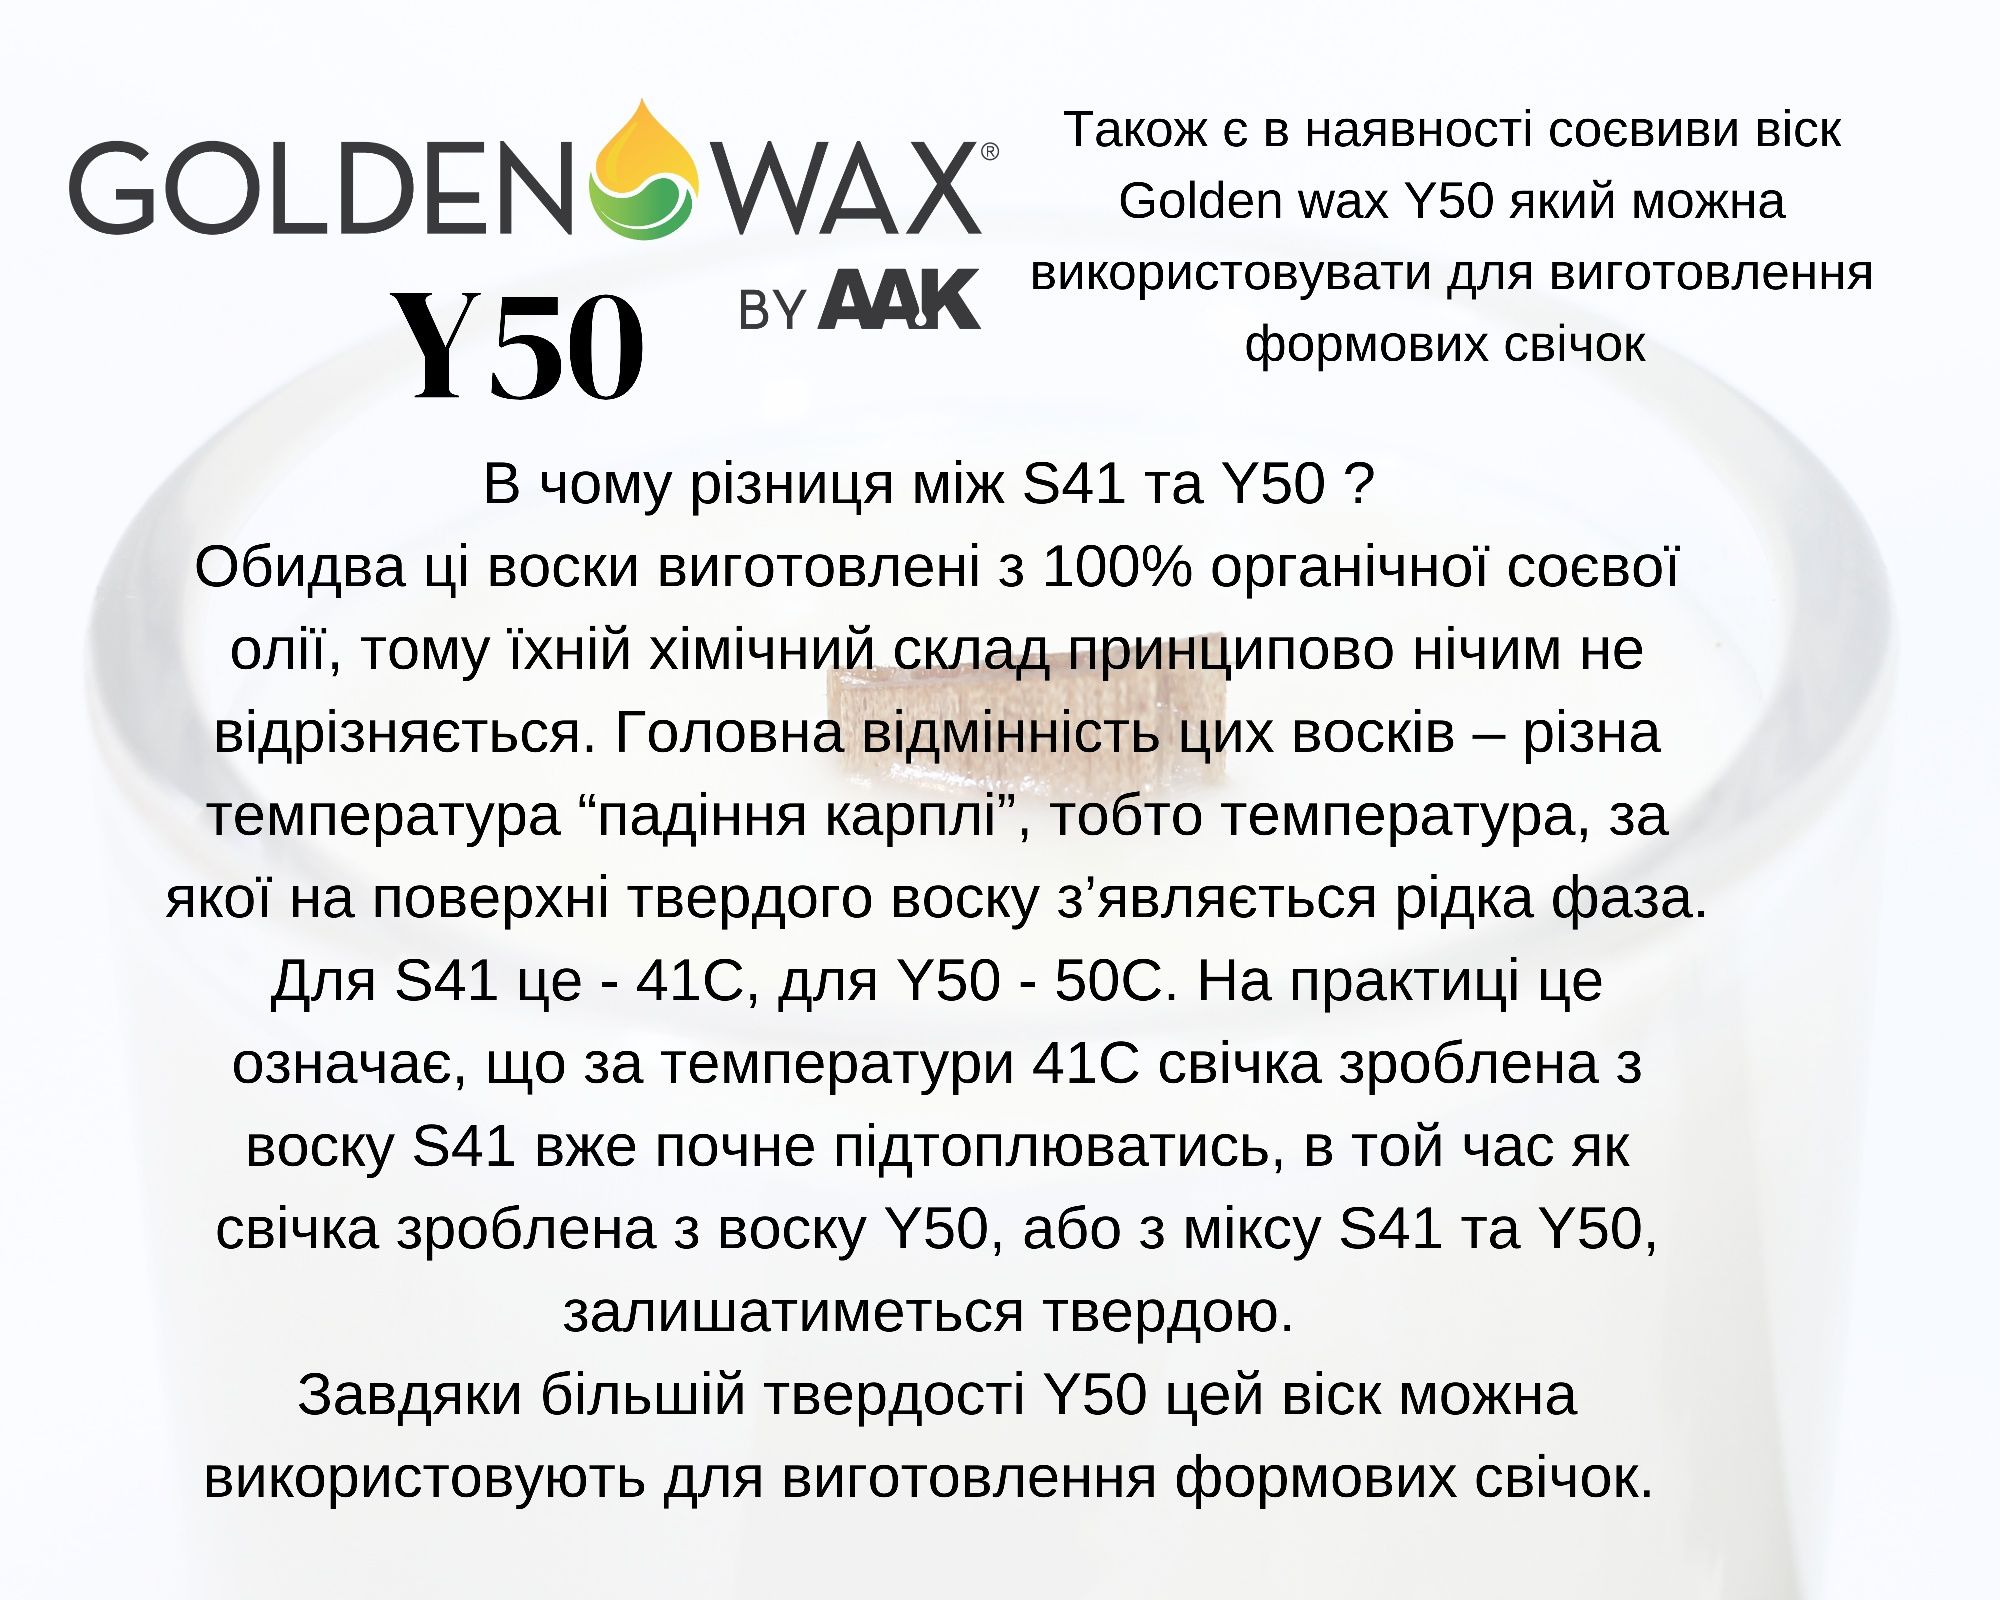 Соєвий віск для виготовлення свічок Golden Wax S41 - Соевый воск